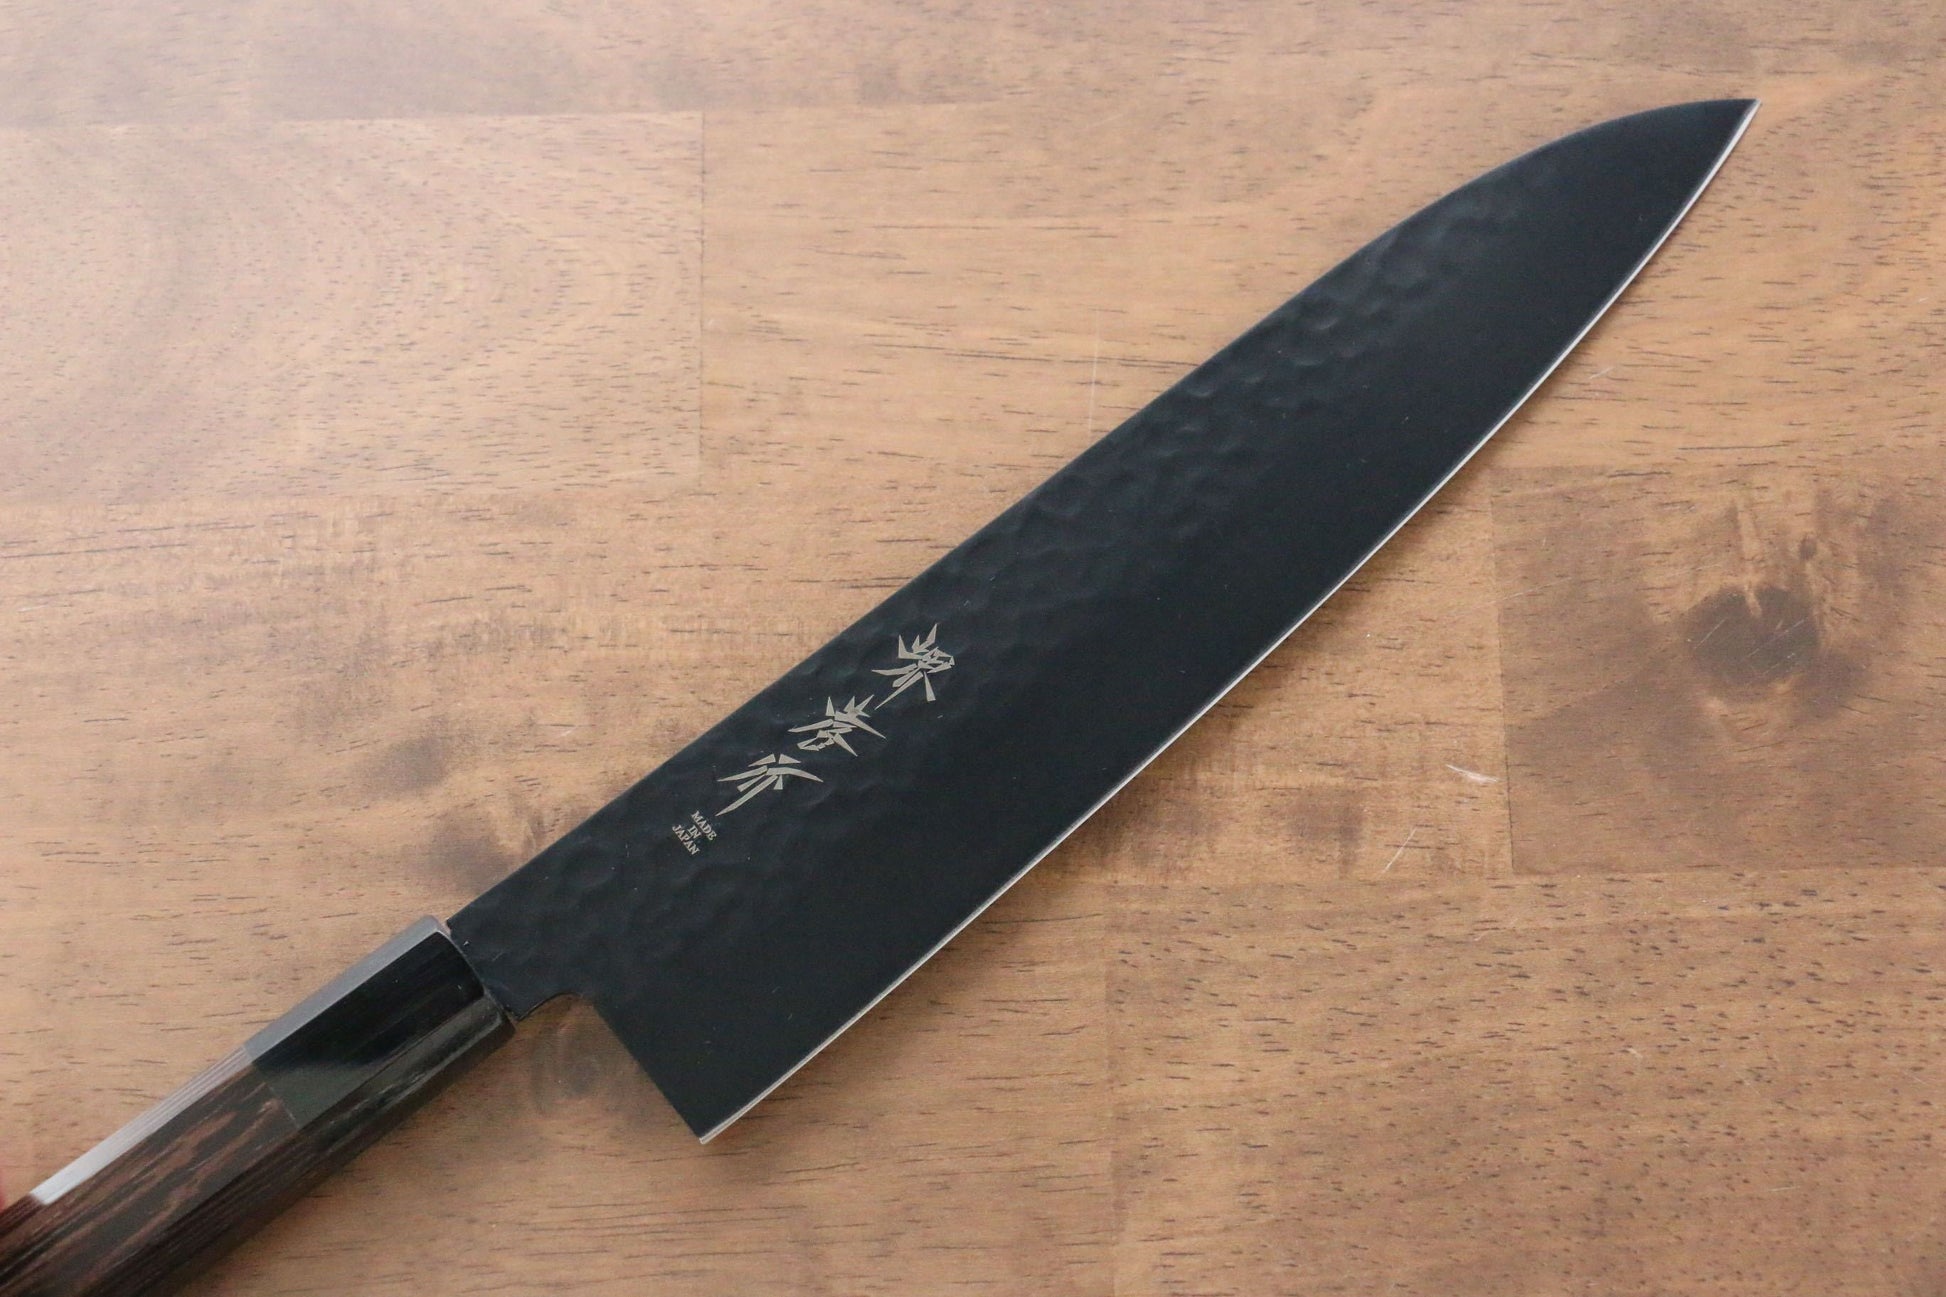 Sakai Takayuki Kurokage VG10 Hammered Teflon Coating Gyuto Japanese Knife 240mm Wenge Handle - Japanny - Best Japanese Knife